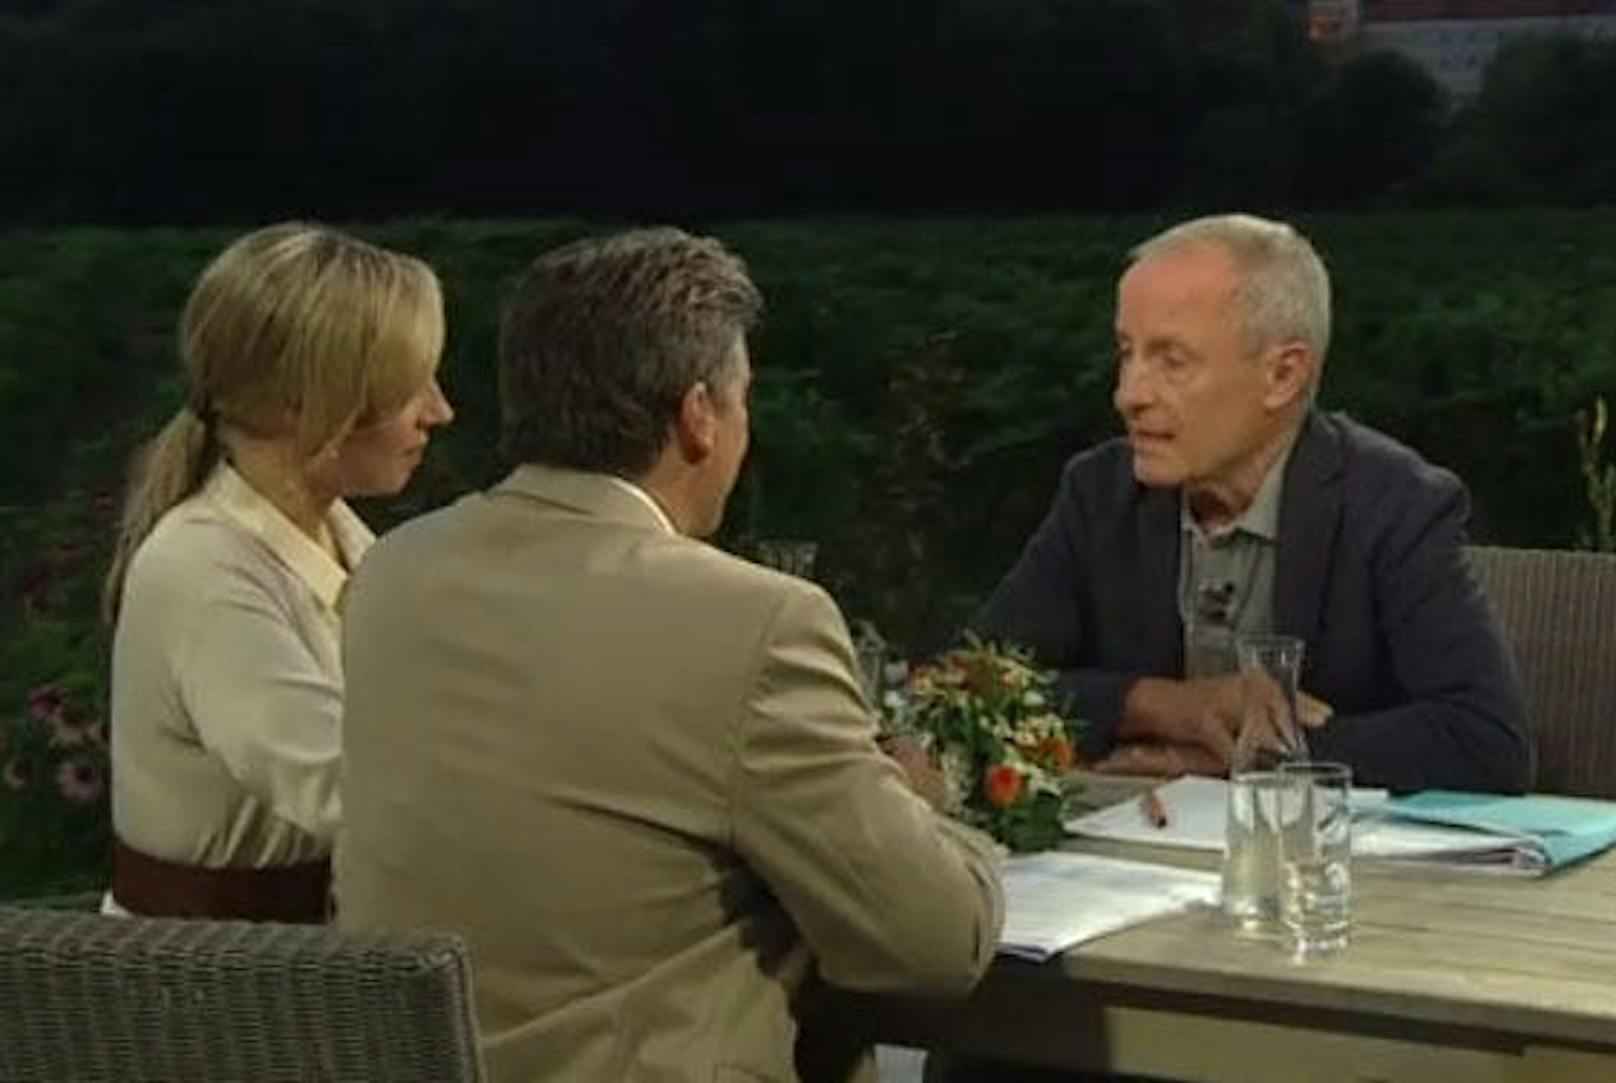 Peter Pilz im Sommergespräch mit Nadja Bernhard und Hans Bürger